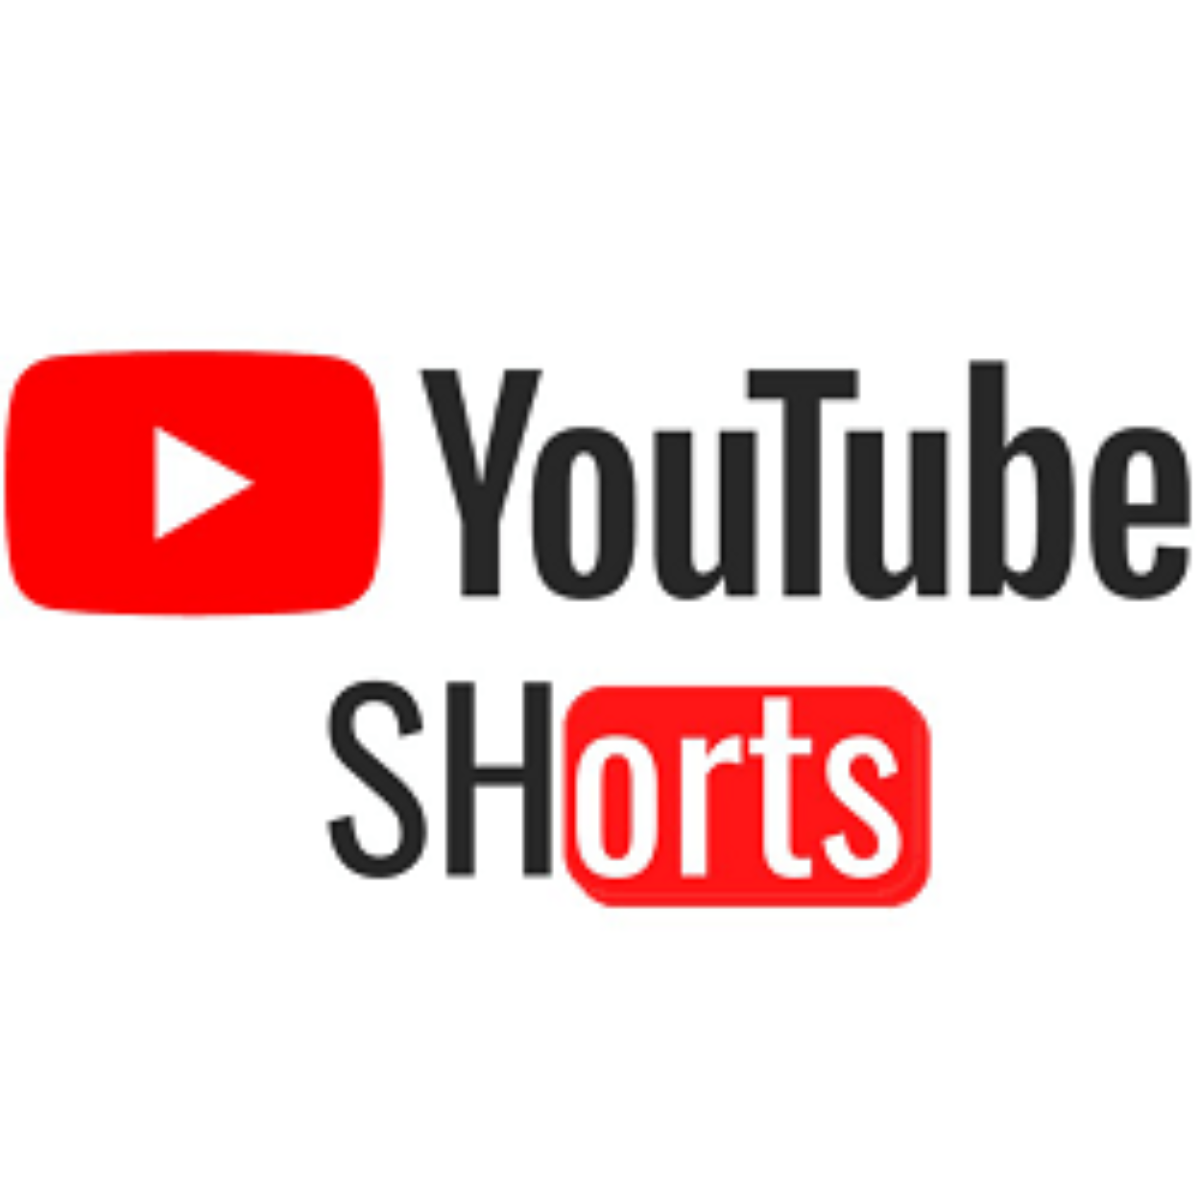 Youtube Shorts Apk Download Maimaim Poana Ho An Ny Android Vaovao Farany